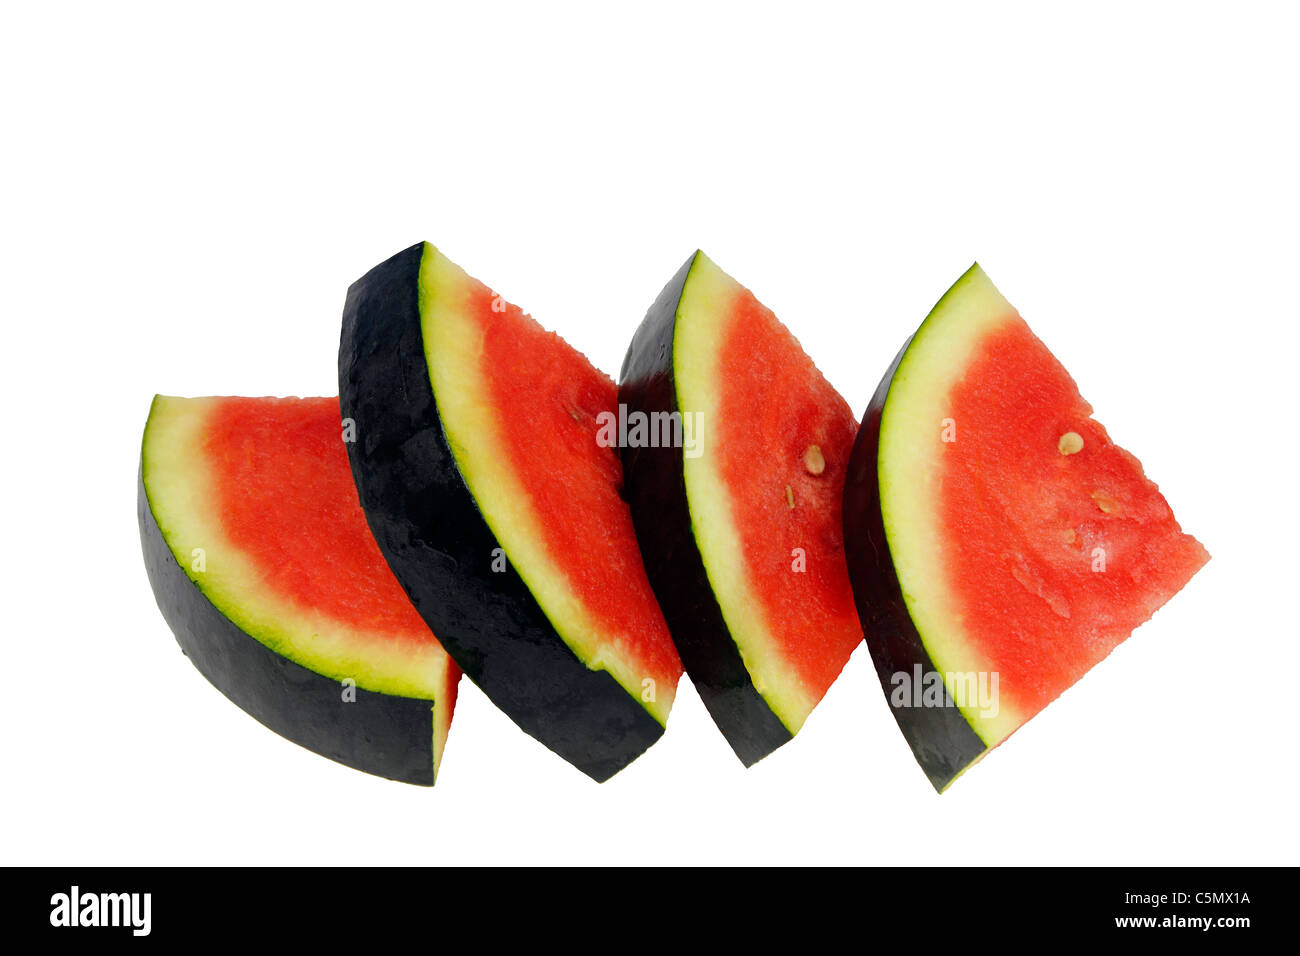 Vier gleiche Stücke von dunklen roten organischen Wassermelone mit dunkel grüne Rinde vier schönen organischen Wassermelone Stücke nebeneinander auf weißem Hintergrund. Stockfoto